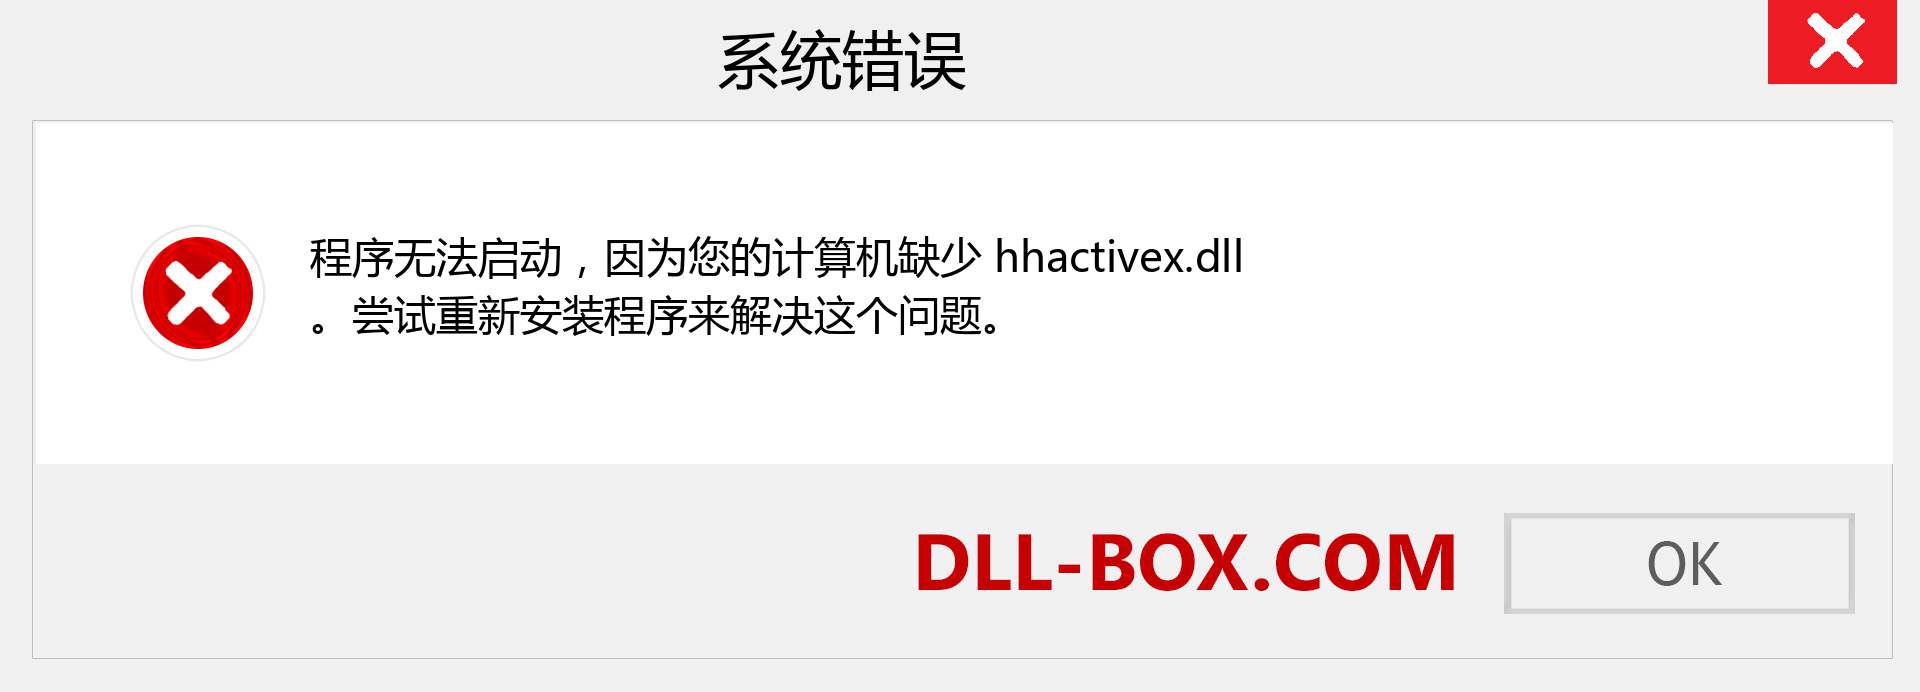 hhactivex.dll 文件丢失？。 适用于 Windows 7、8、10 的下载 - 修复 Windows、照片、图像上的 hhactivex dll 丢失错误